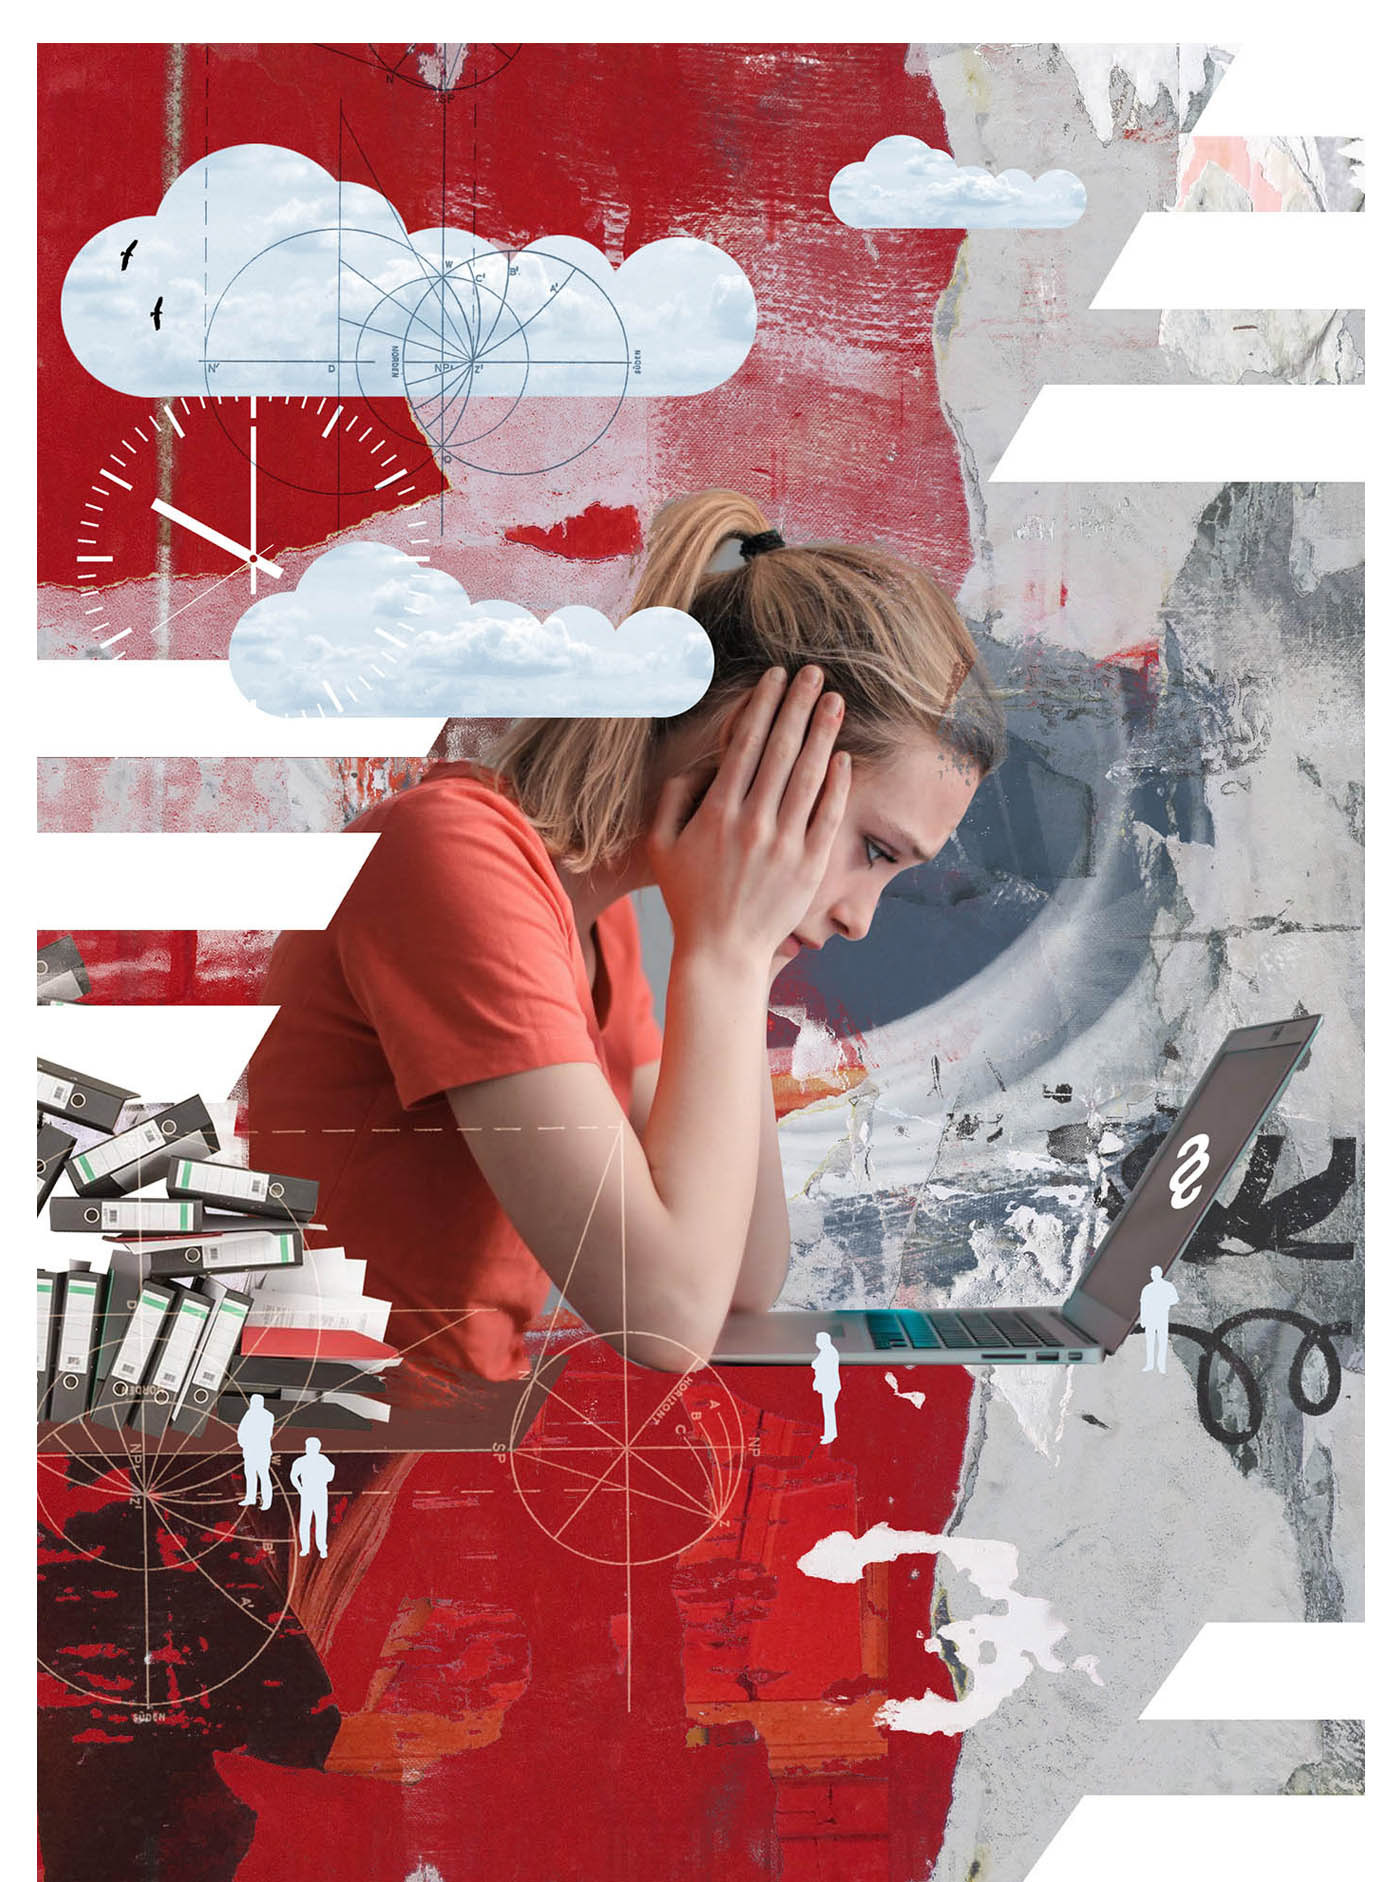 collage music poster colagem Editorial Illustration portrait psychology Digital Art  ILLUSTRATION  illustrated column